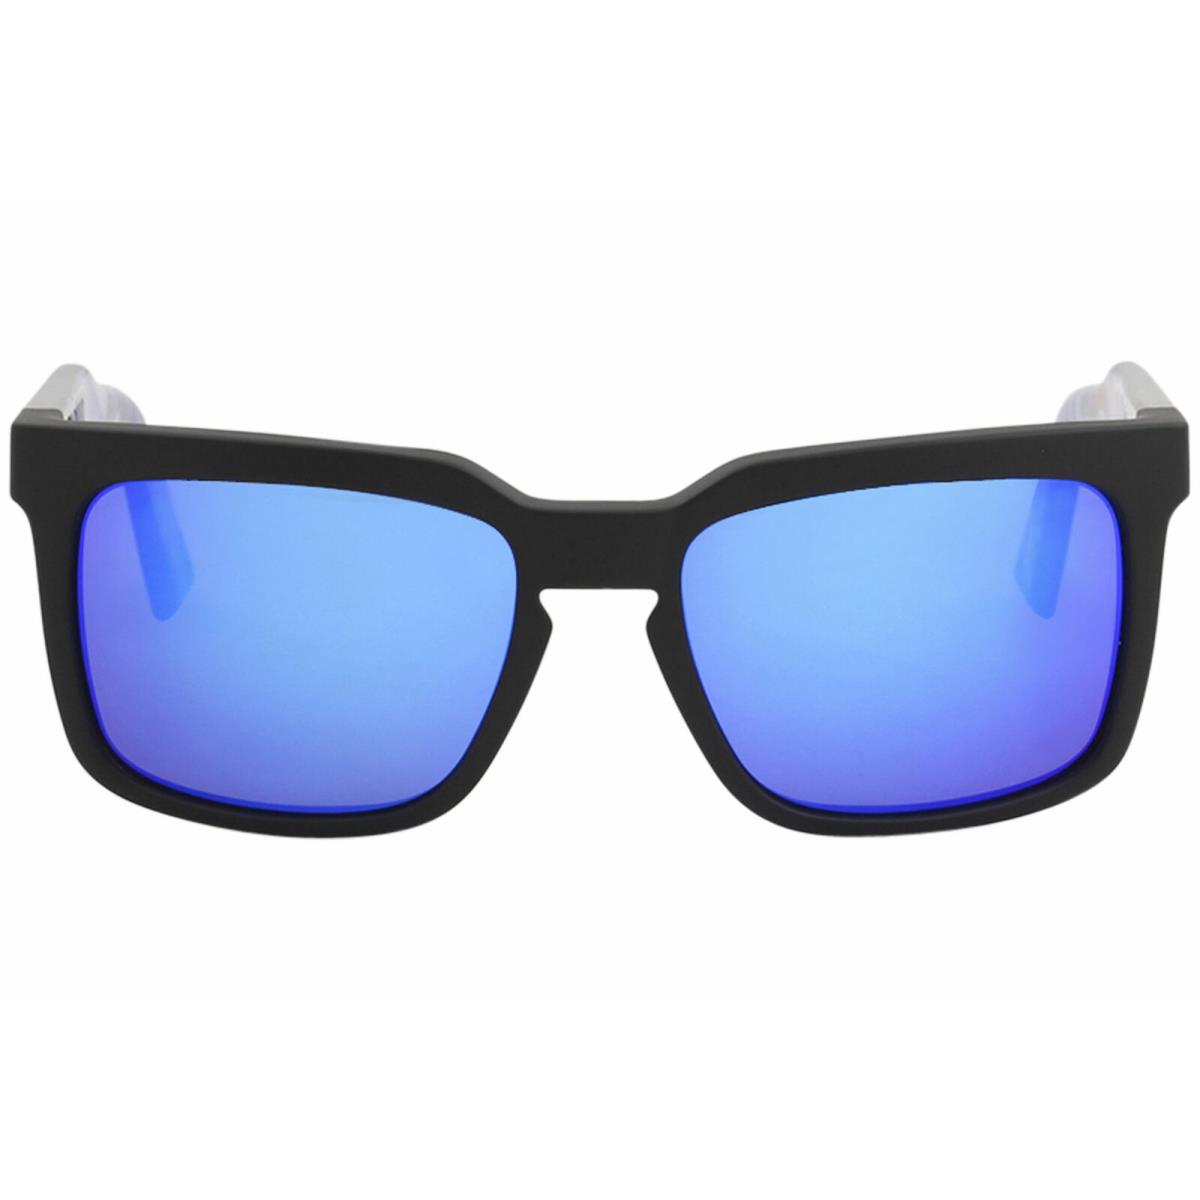 Dragon Mr. Blonde Schoph 909 Blue Ion Fashion Square Sunglasses 58mm